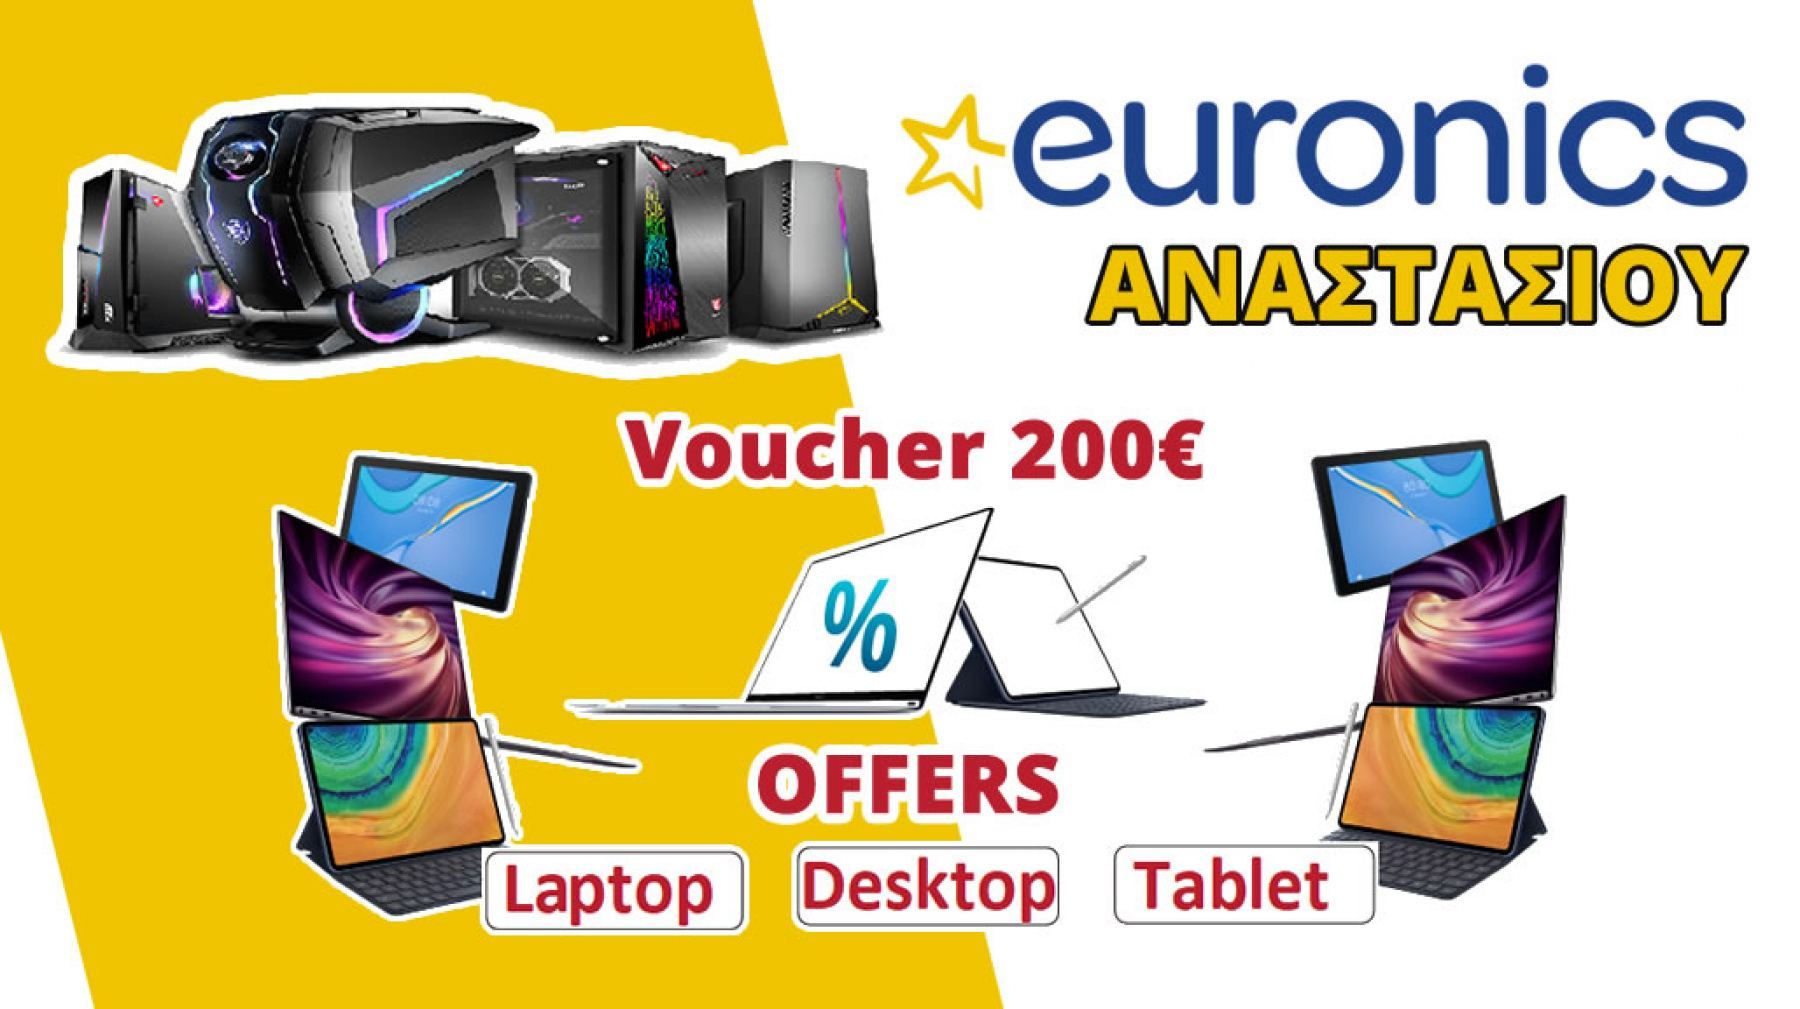 Είσαι εκπαιδευτικός; Έλα στη Euronics Αναστασίου να εξαργυρώσεις Voucher αξίας 200€!